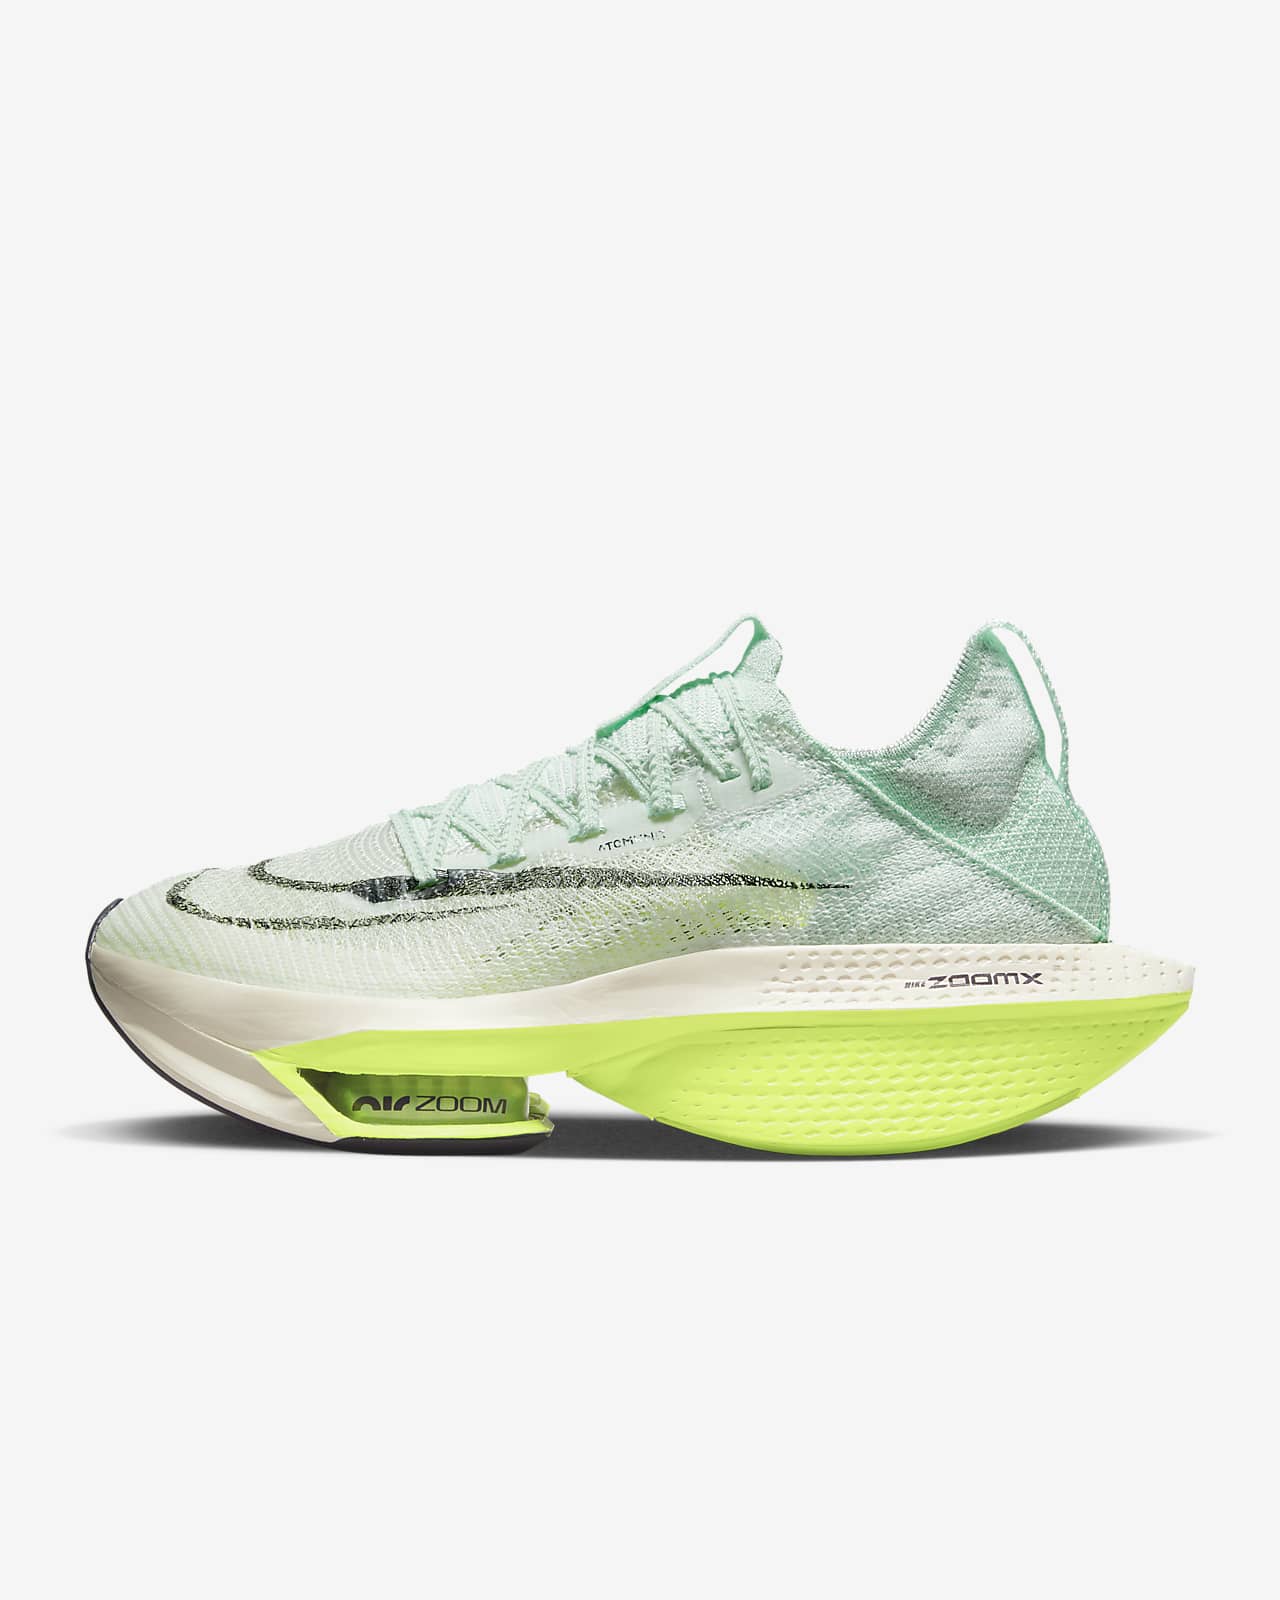 Γυναικεία παπούτσια αγώνων δρόμου Nike Air Zoom Alphafly NEXT% 2